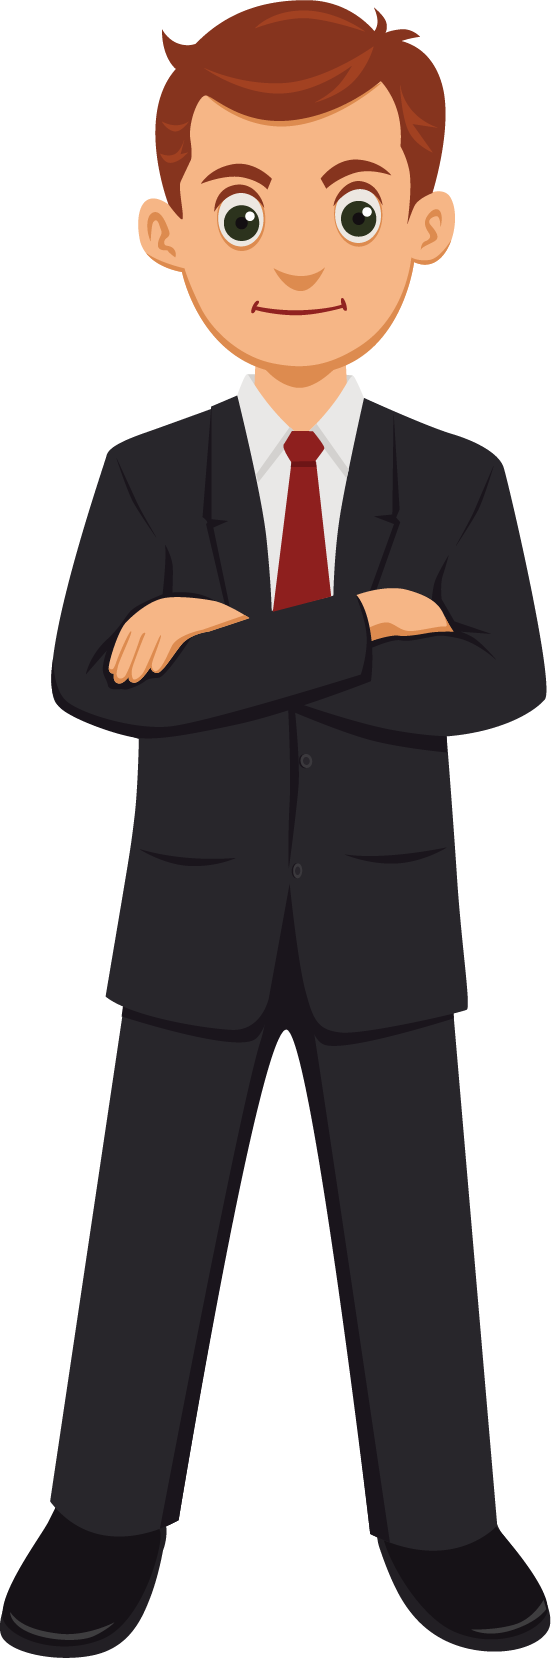 Standing Human Vexel Businessperson Behavior Cartoon PNG Image